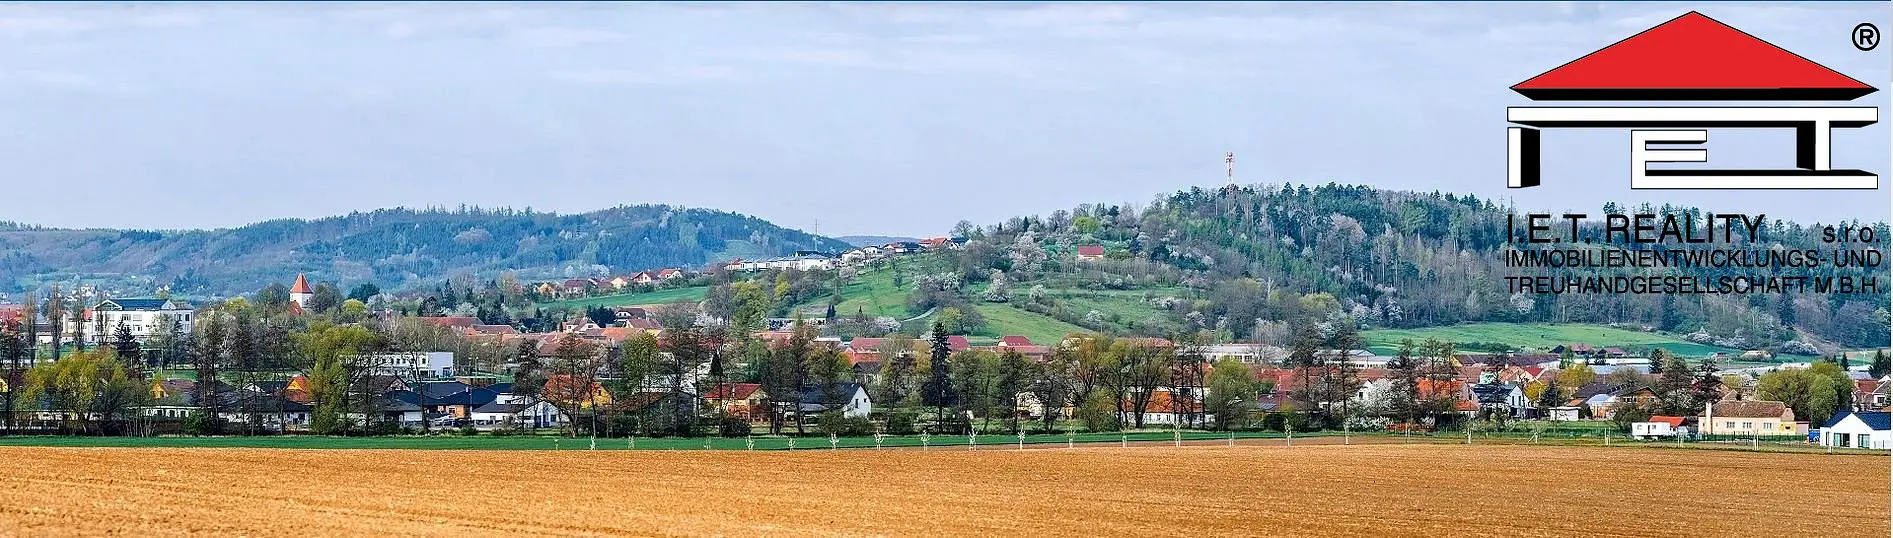 Drásov, okres Brno-venkov